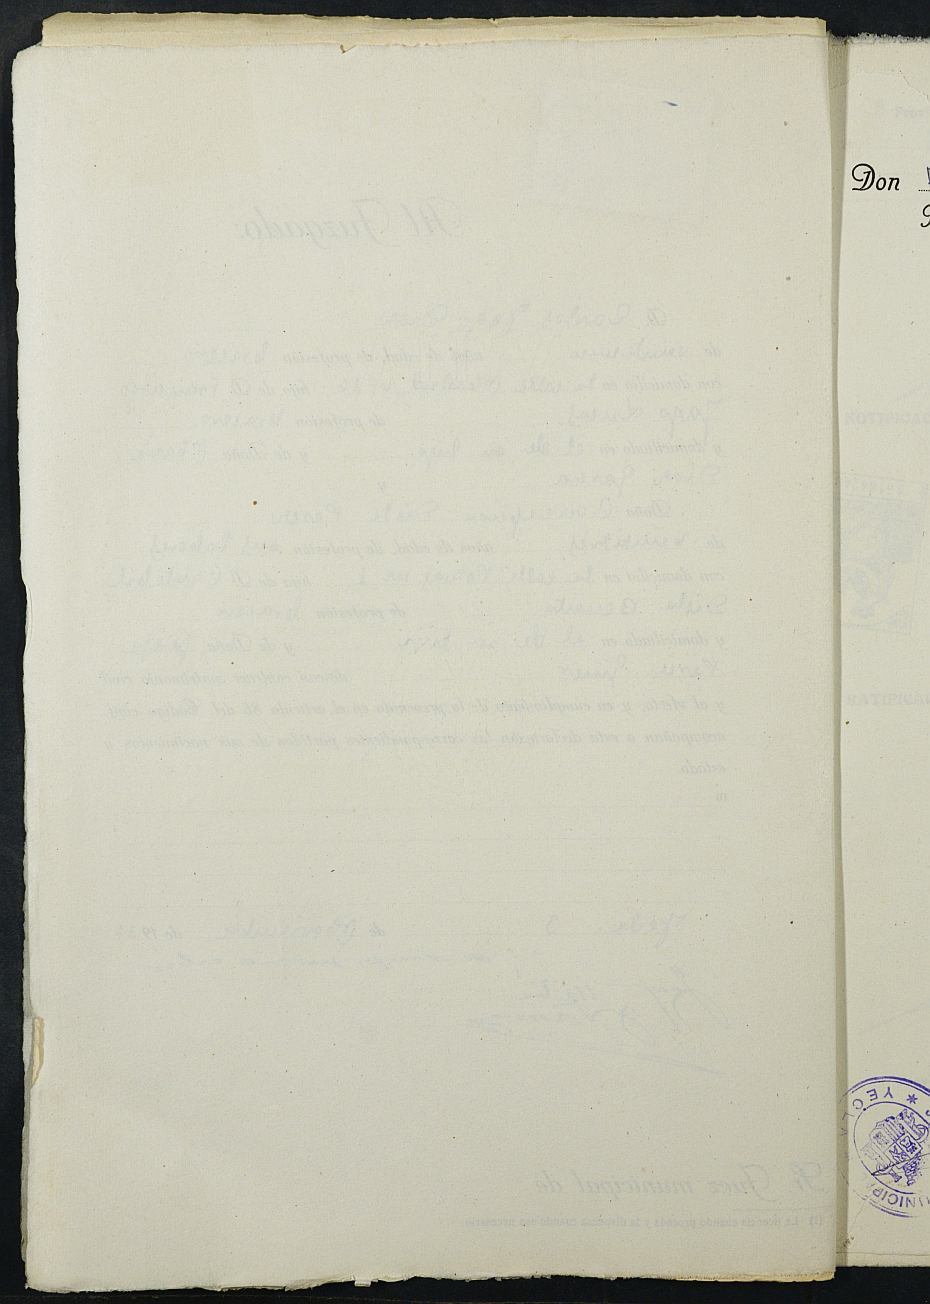 Expediente nº 114 para la inscripción de matrimonio civil en el Registro Civil de Yecla entre Carlos Yago Díaz y María Concepción Disla Pérez.